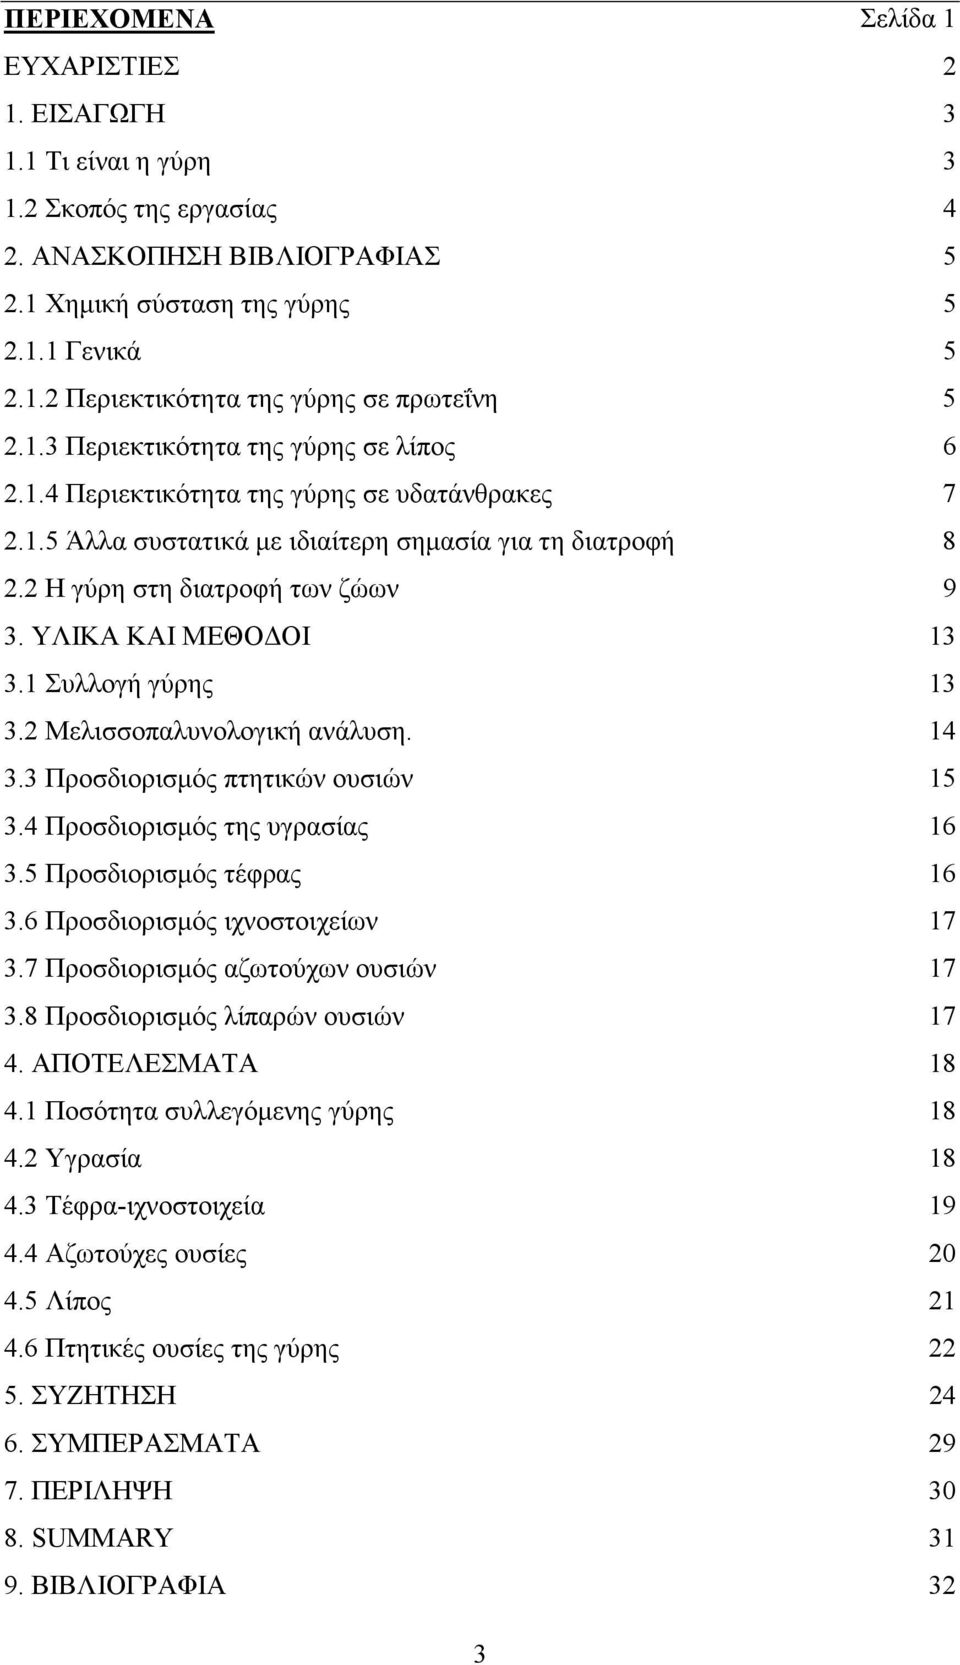 ΥΛΙΚΑ ΚΑΙ ΜΕΘΟ ΟΙ 13 3.1 Συλλογή γύρης 13 3.2 Μελισσοπαλυνολογική ανάλυση. 14 3.3 Προσδιορισµός πτητικών ουσιών 15 3.4 Προσδιορισµός της υγρασίας 16 3.5 Προσδιορισµός τέφρας 16 3.